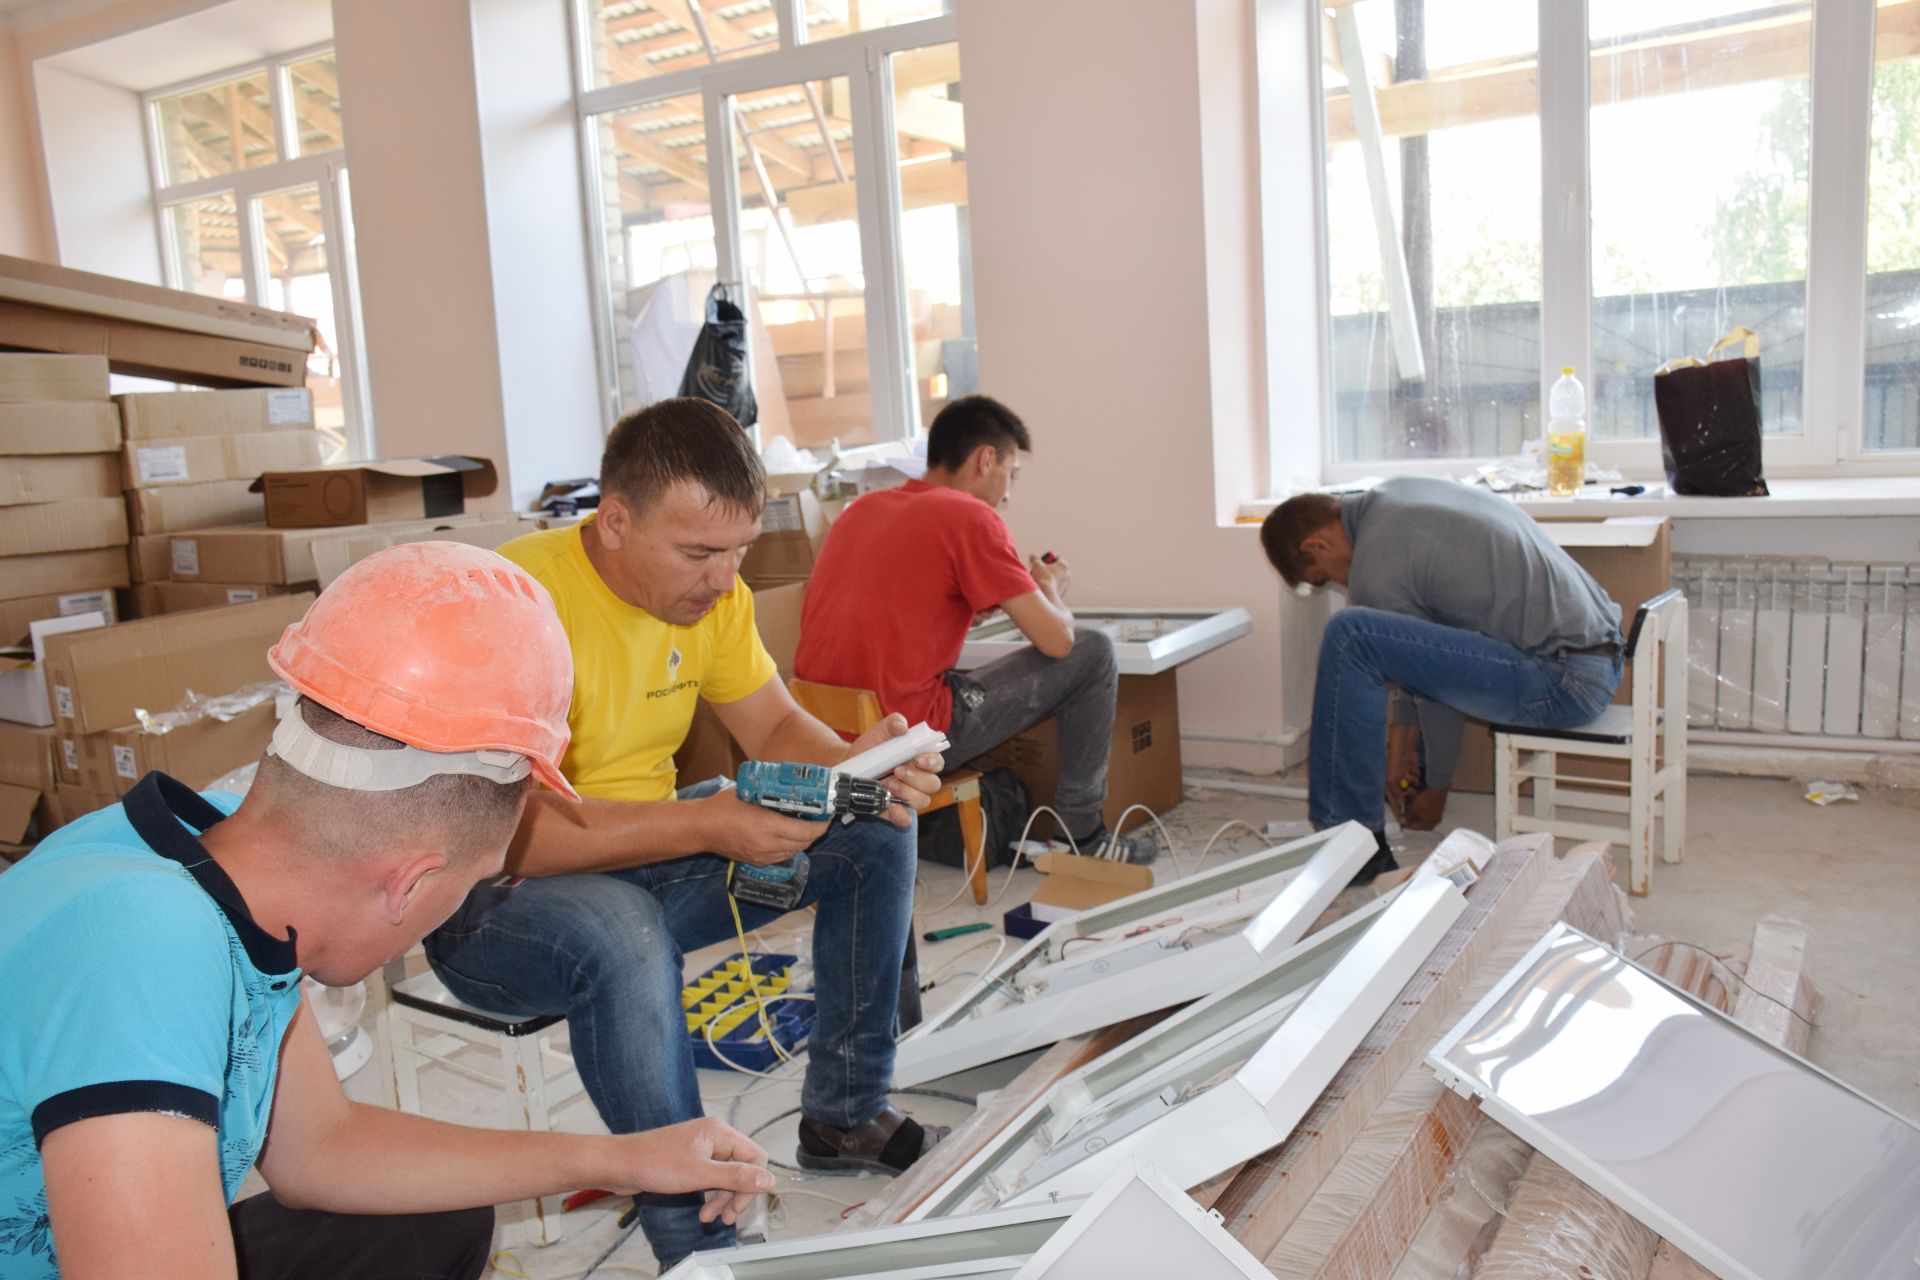 Руководитель исполкома Нурлатского района Алмаз Ахметшин посетил объект капитального ремонта в Нурлате - детский сад "Теремок"